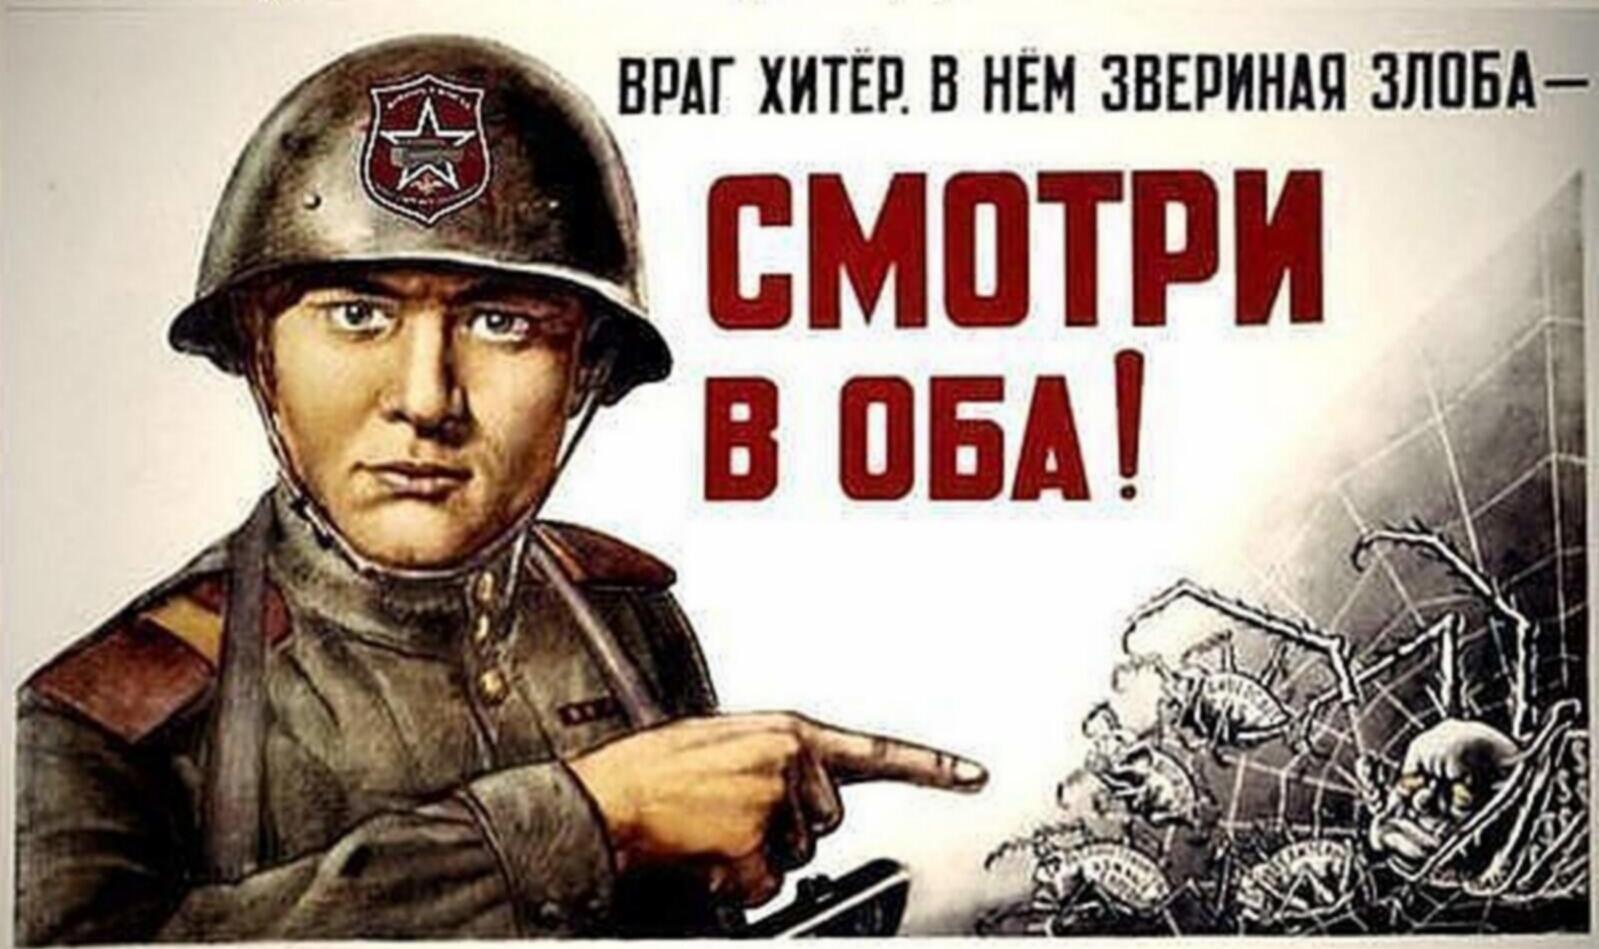 Бдительность на полную. Советские плакаты. Советские плакаты про бдительность. Товарищ будь бдителен плакат. Враг не дремлет плакат.